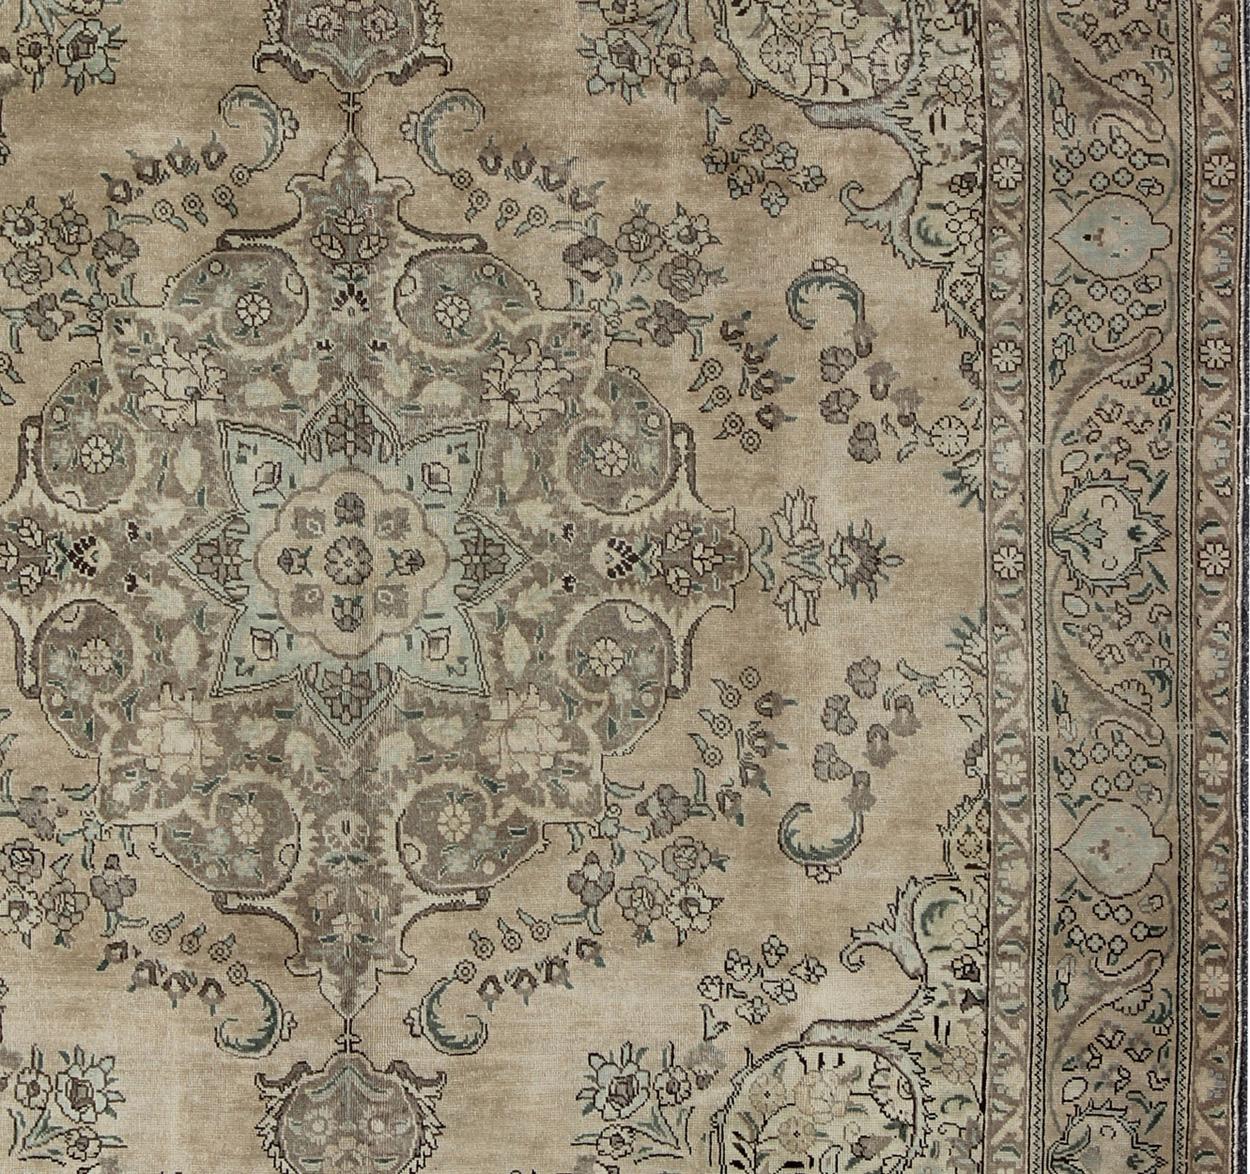 Medaillon-Stil Tabriz persischen Vintage-Teppich mit wirbelnden floralen Muster, Keivan Woven Arts / Teppich H-702-11, Herkunftsland / Typ: Iran / Täbris, um 1950

Dieser handgewebte persische Täbriz-Teppich aus der Mitte des 20. Jahrhunderts